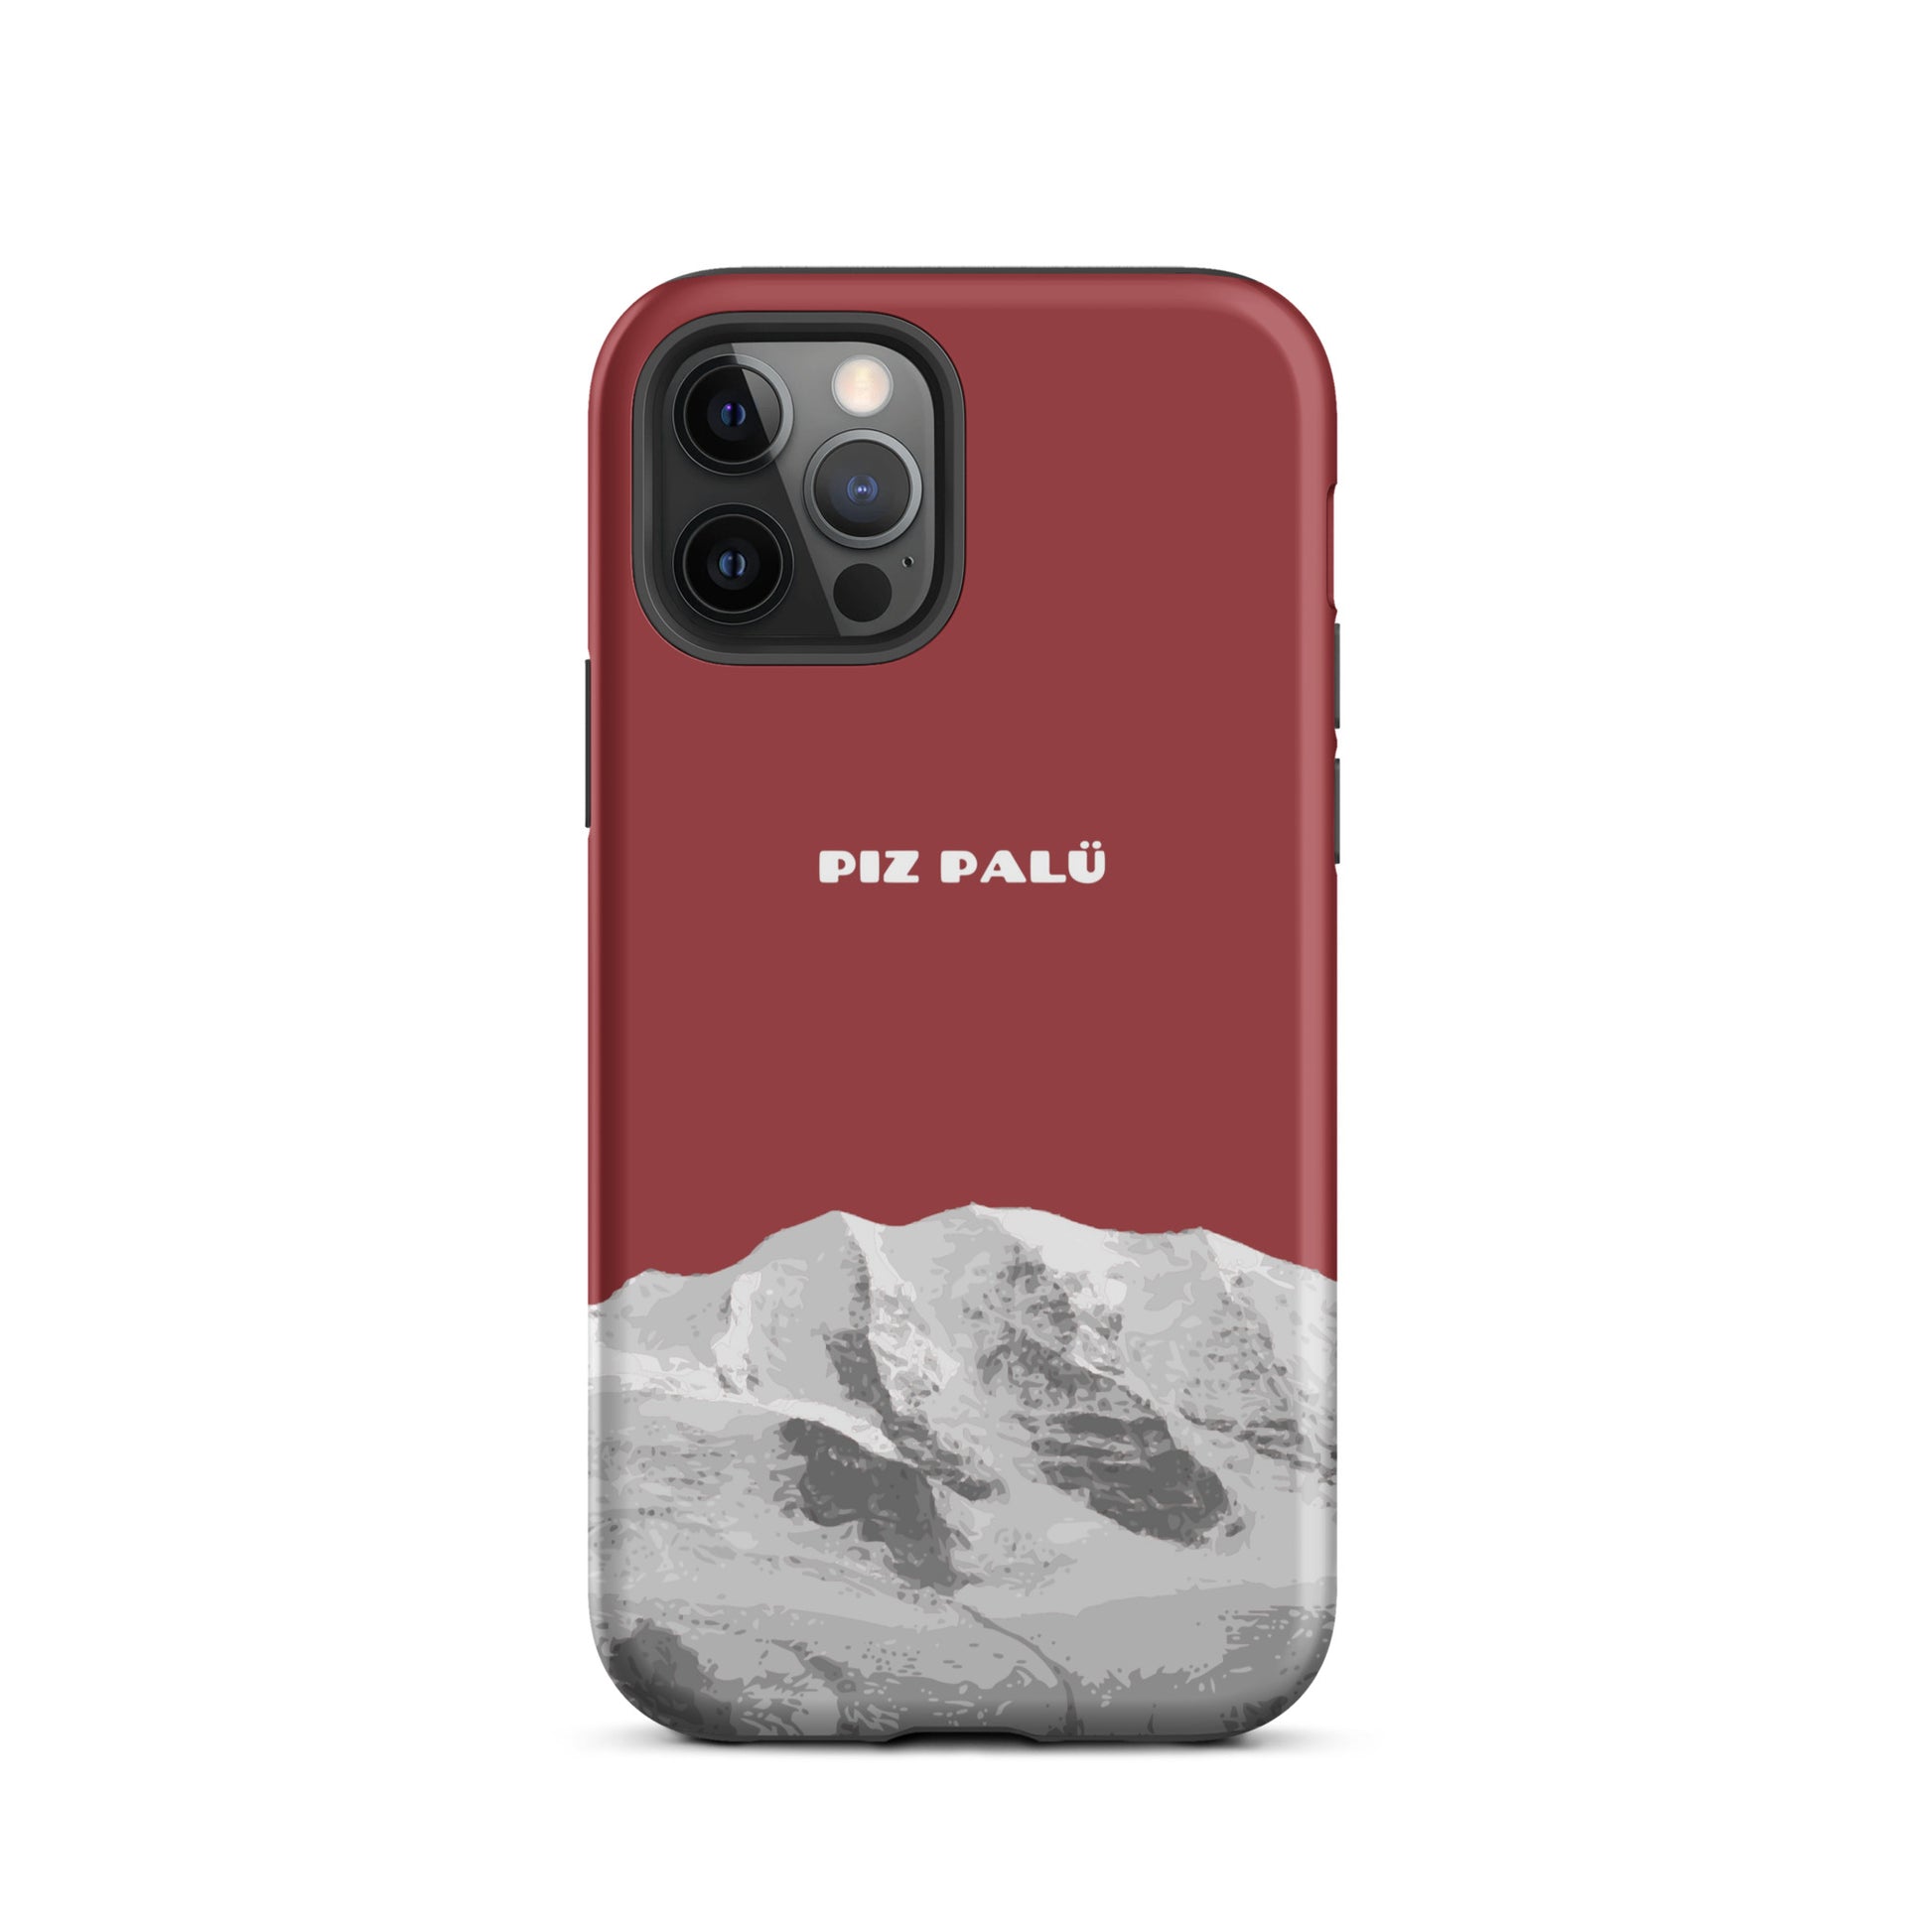 Hülle für das iPhone 12 Pro von Apple in der Farbe Rot, dass den Piz Palü in Graubünden zeigt.